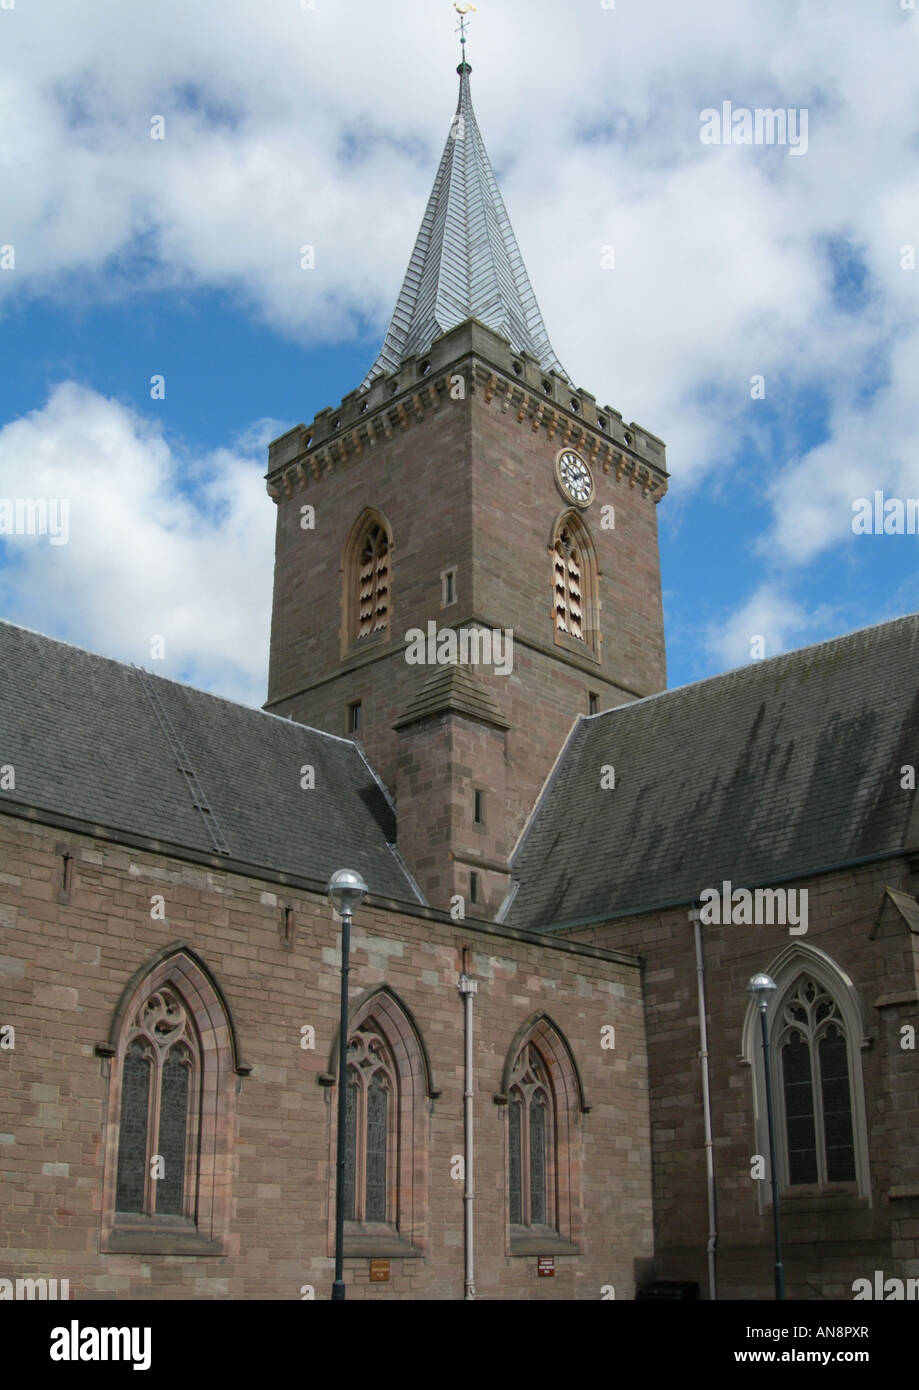 La torre campanario y el campanario de San John's Kirk (Iglesia), Perth, Scotland, Reino Unido Foto de stock